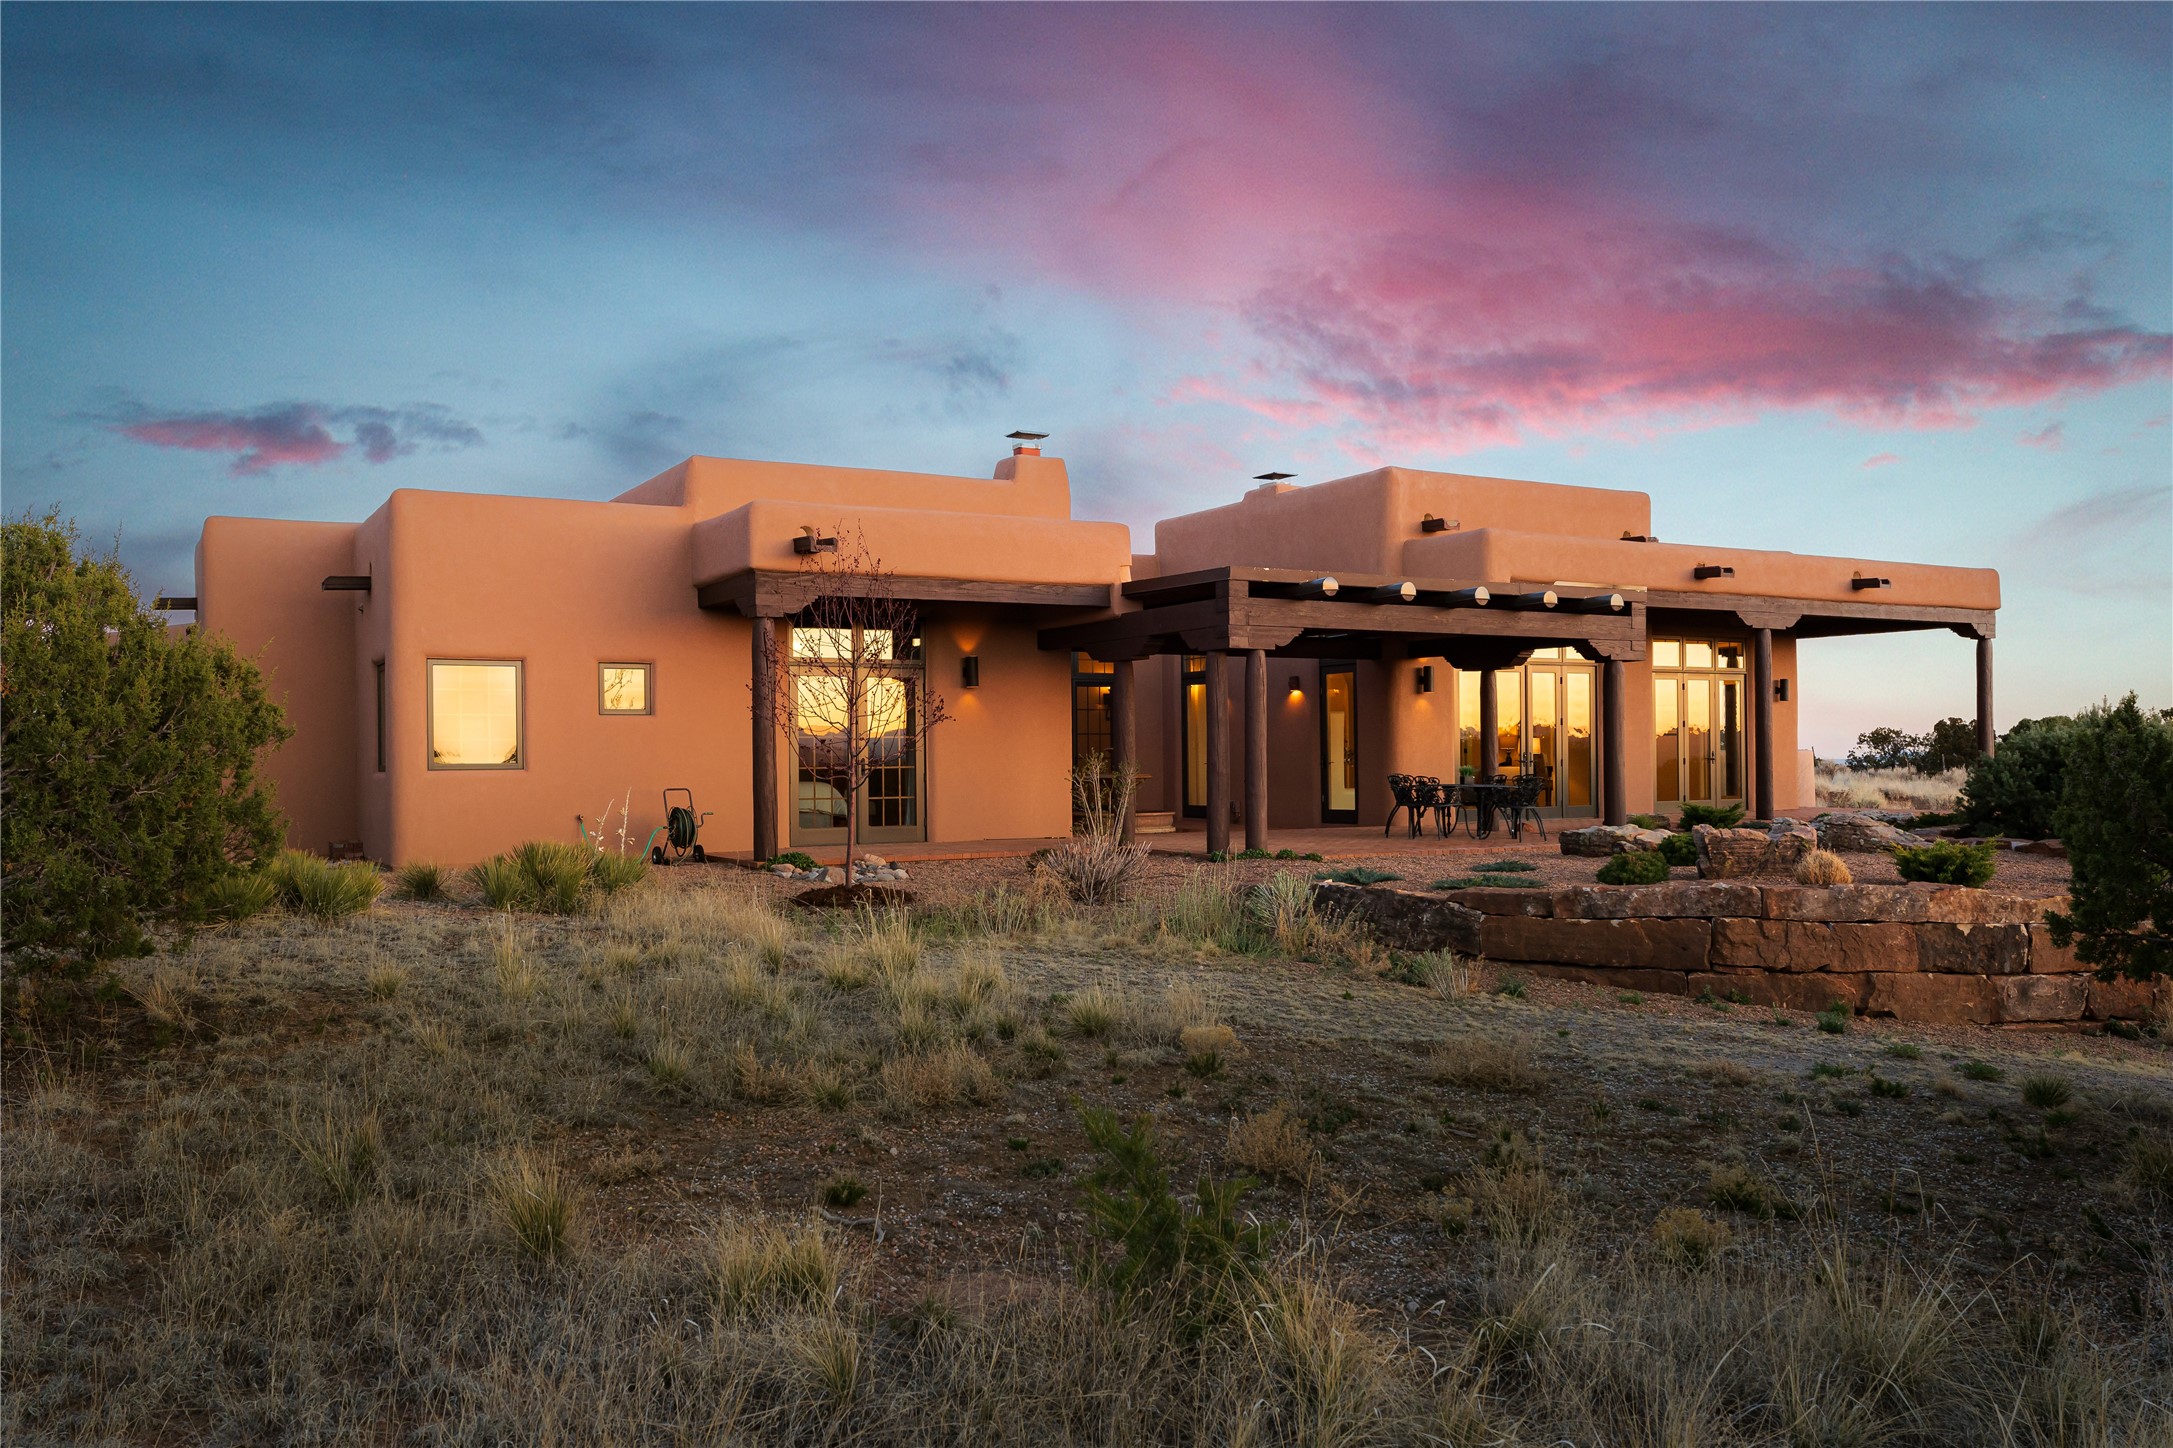 20 Black Mesa, Santa Fe, New Mexico 87506, 3 Bedrooms Bedrooms, ,3 BathroomsBathrooms,Residential,For Sale,20 Black Mesa,202401069